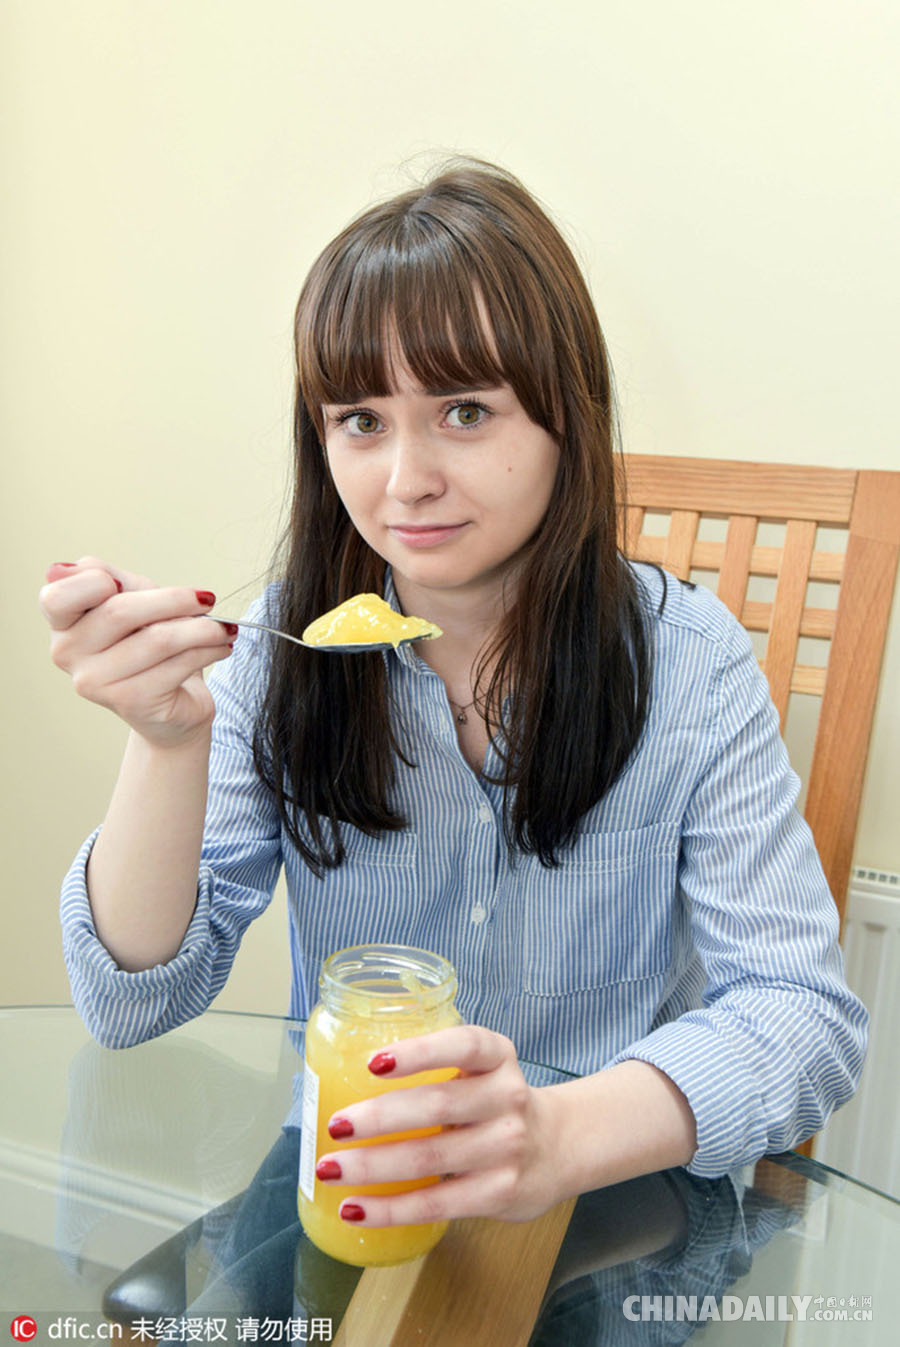 英异食少女从小只吃柠檬酱 治疗师将其催眠治愈